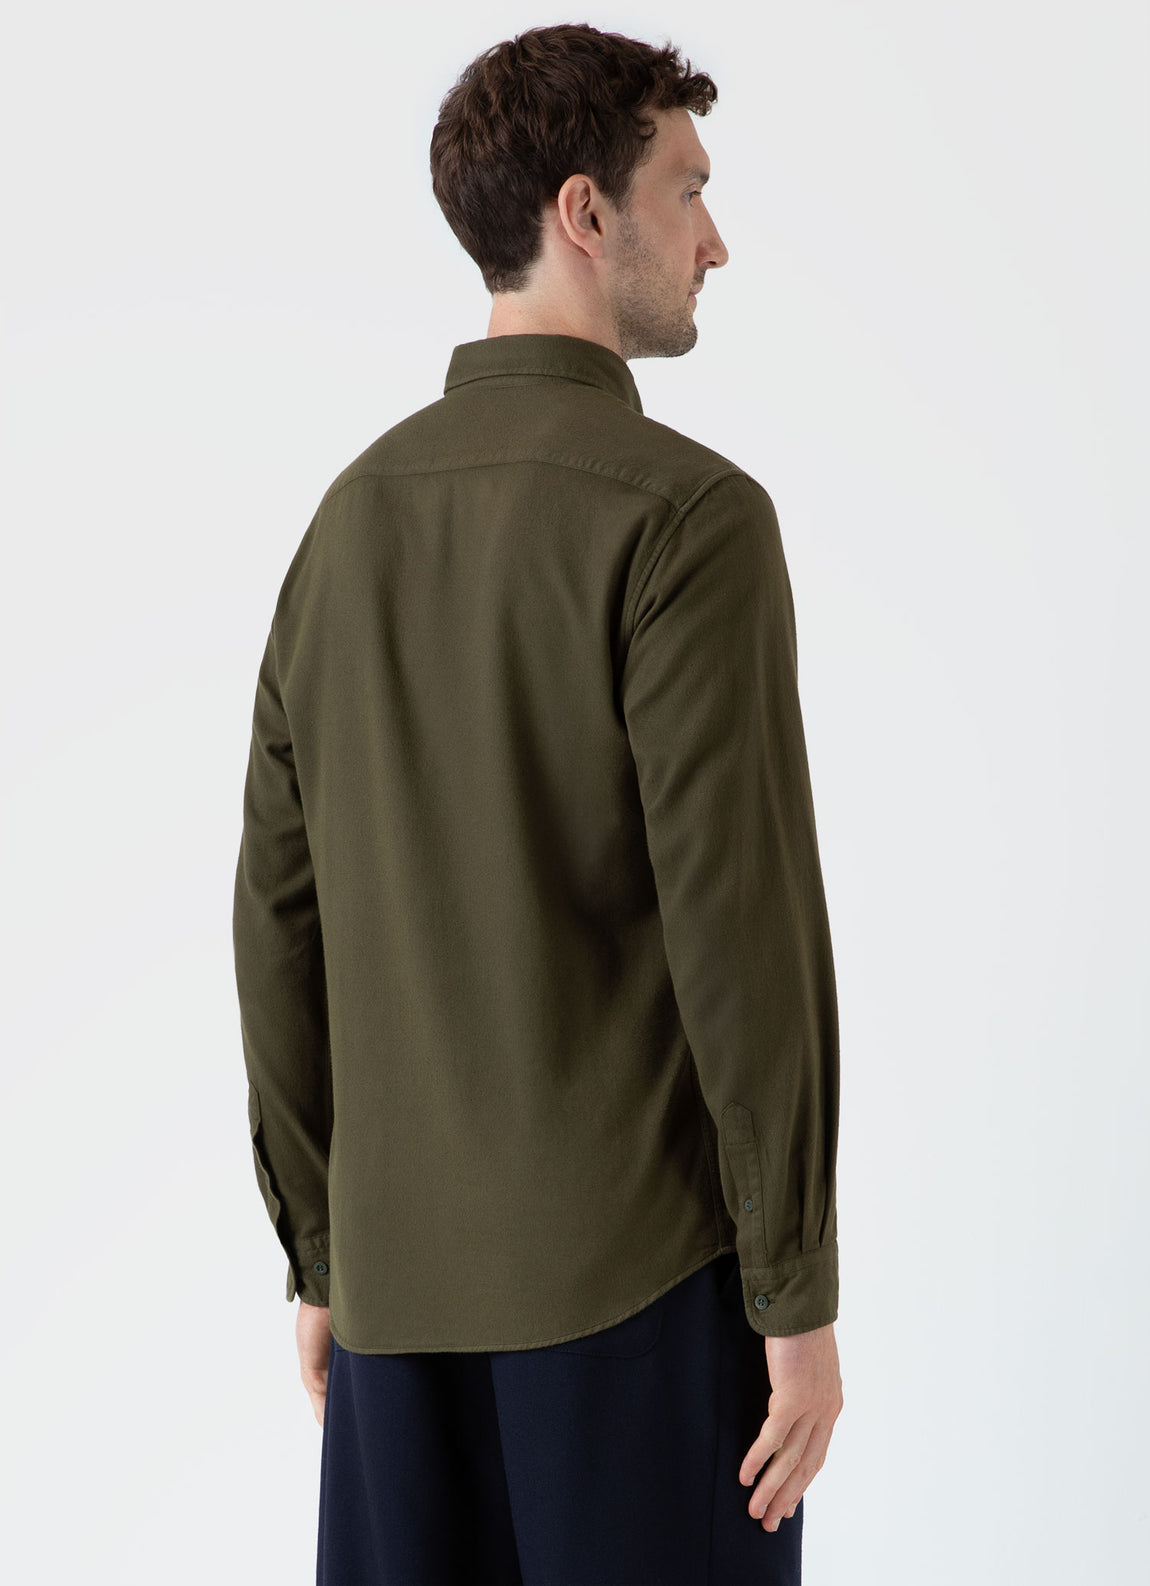 Men's Button Down Flannel Shirt in Dark Olive | Sunspel